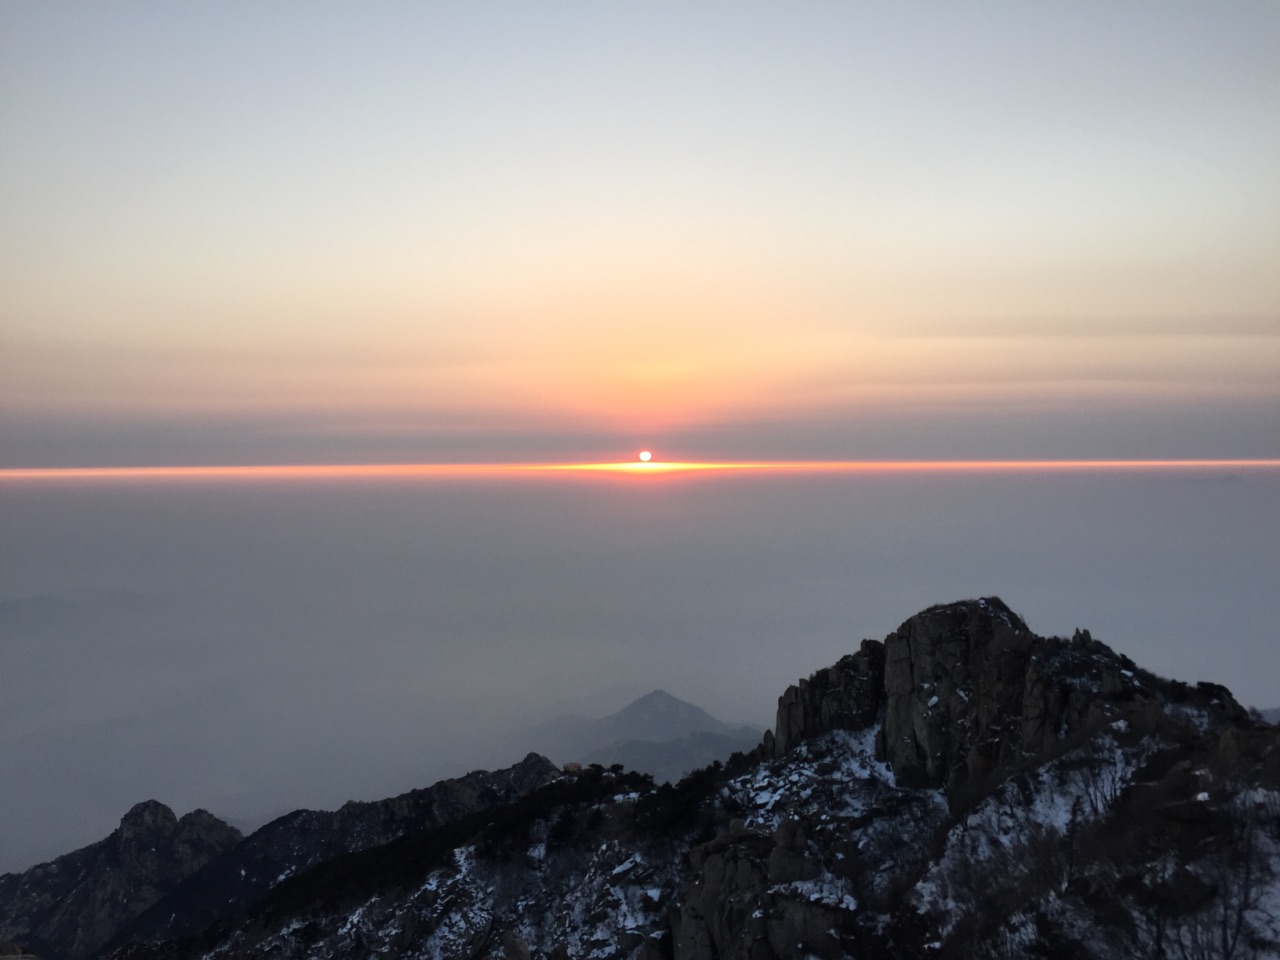 【携程攻略】泰山泰山风景区景点,景色很美丽,山顶看日出很美的风景